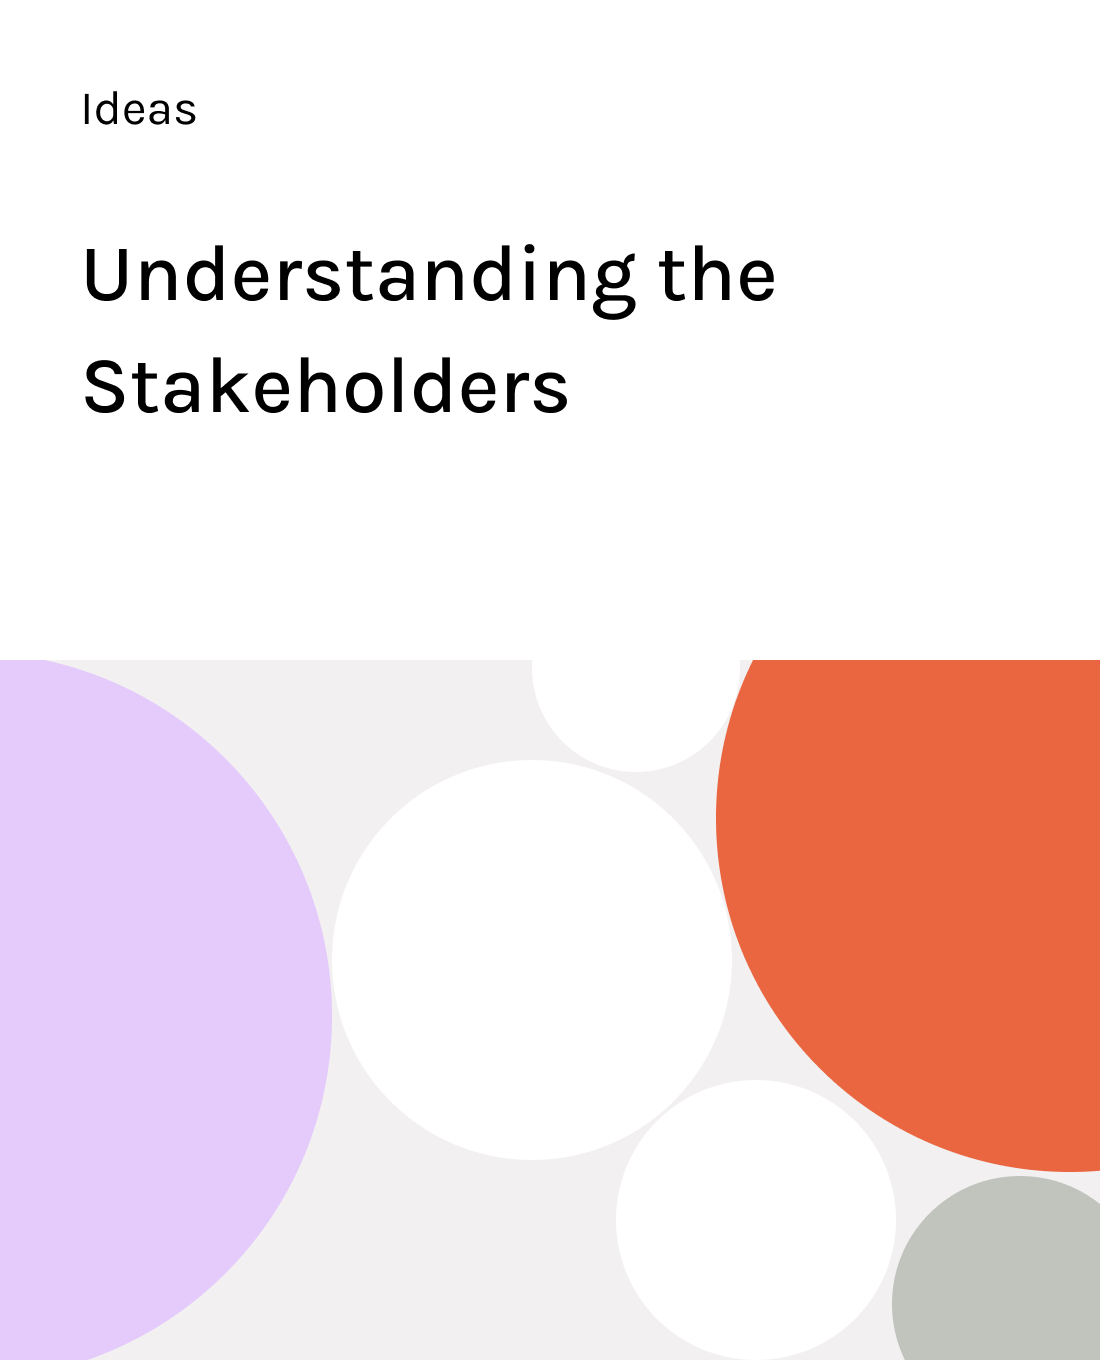 Understanding key stakeholders